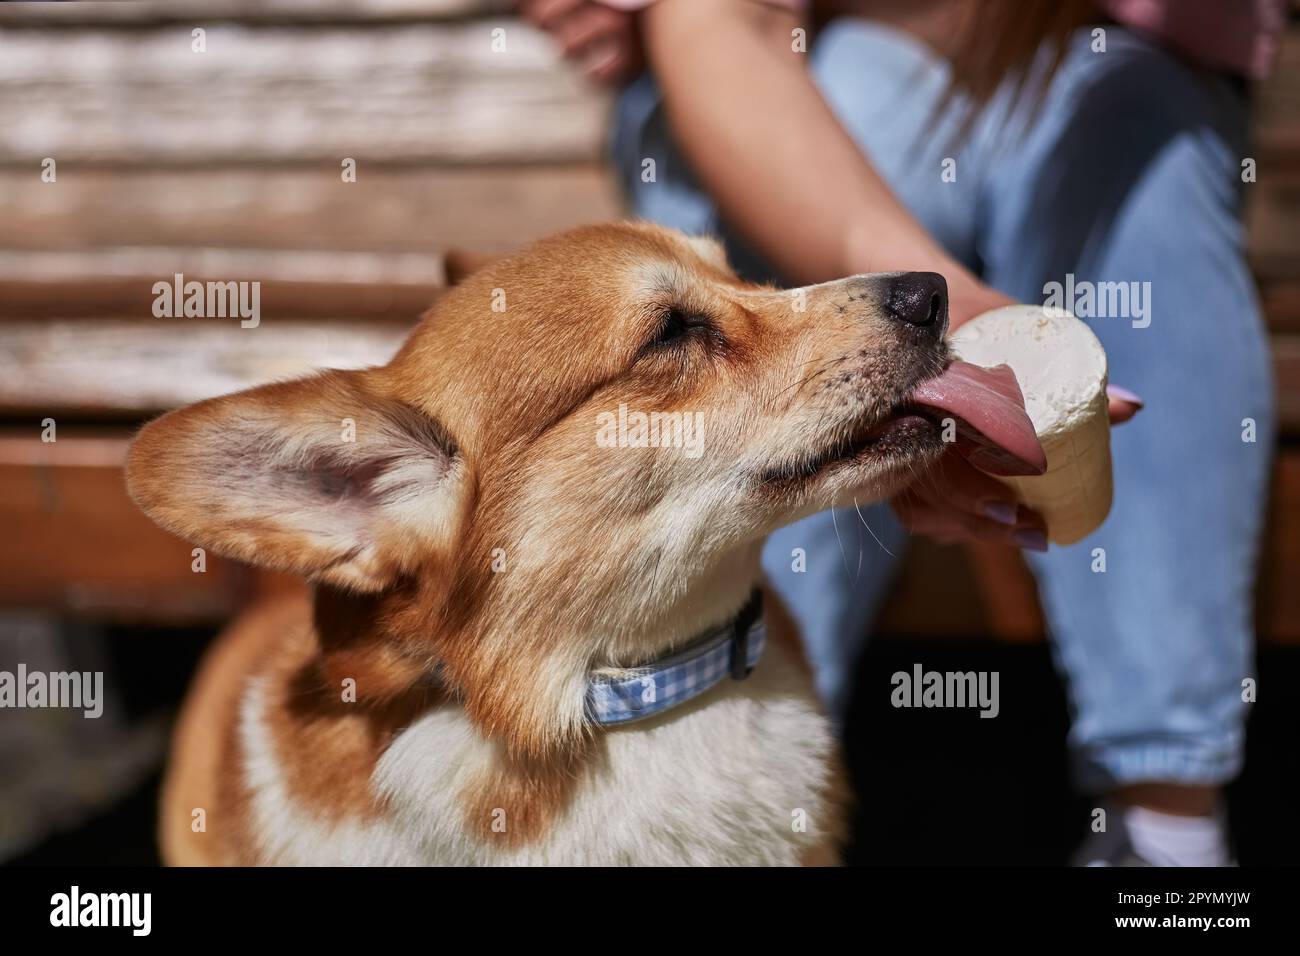 Corgi manger une glace en gros plan. Le propriétaire nourrissant un dessert pour le jeune chien Corgi brun Pembroke gallois Banque D'Images